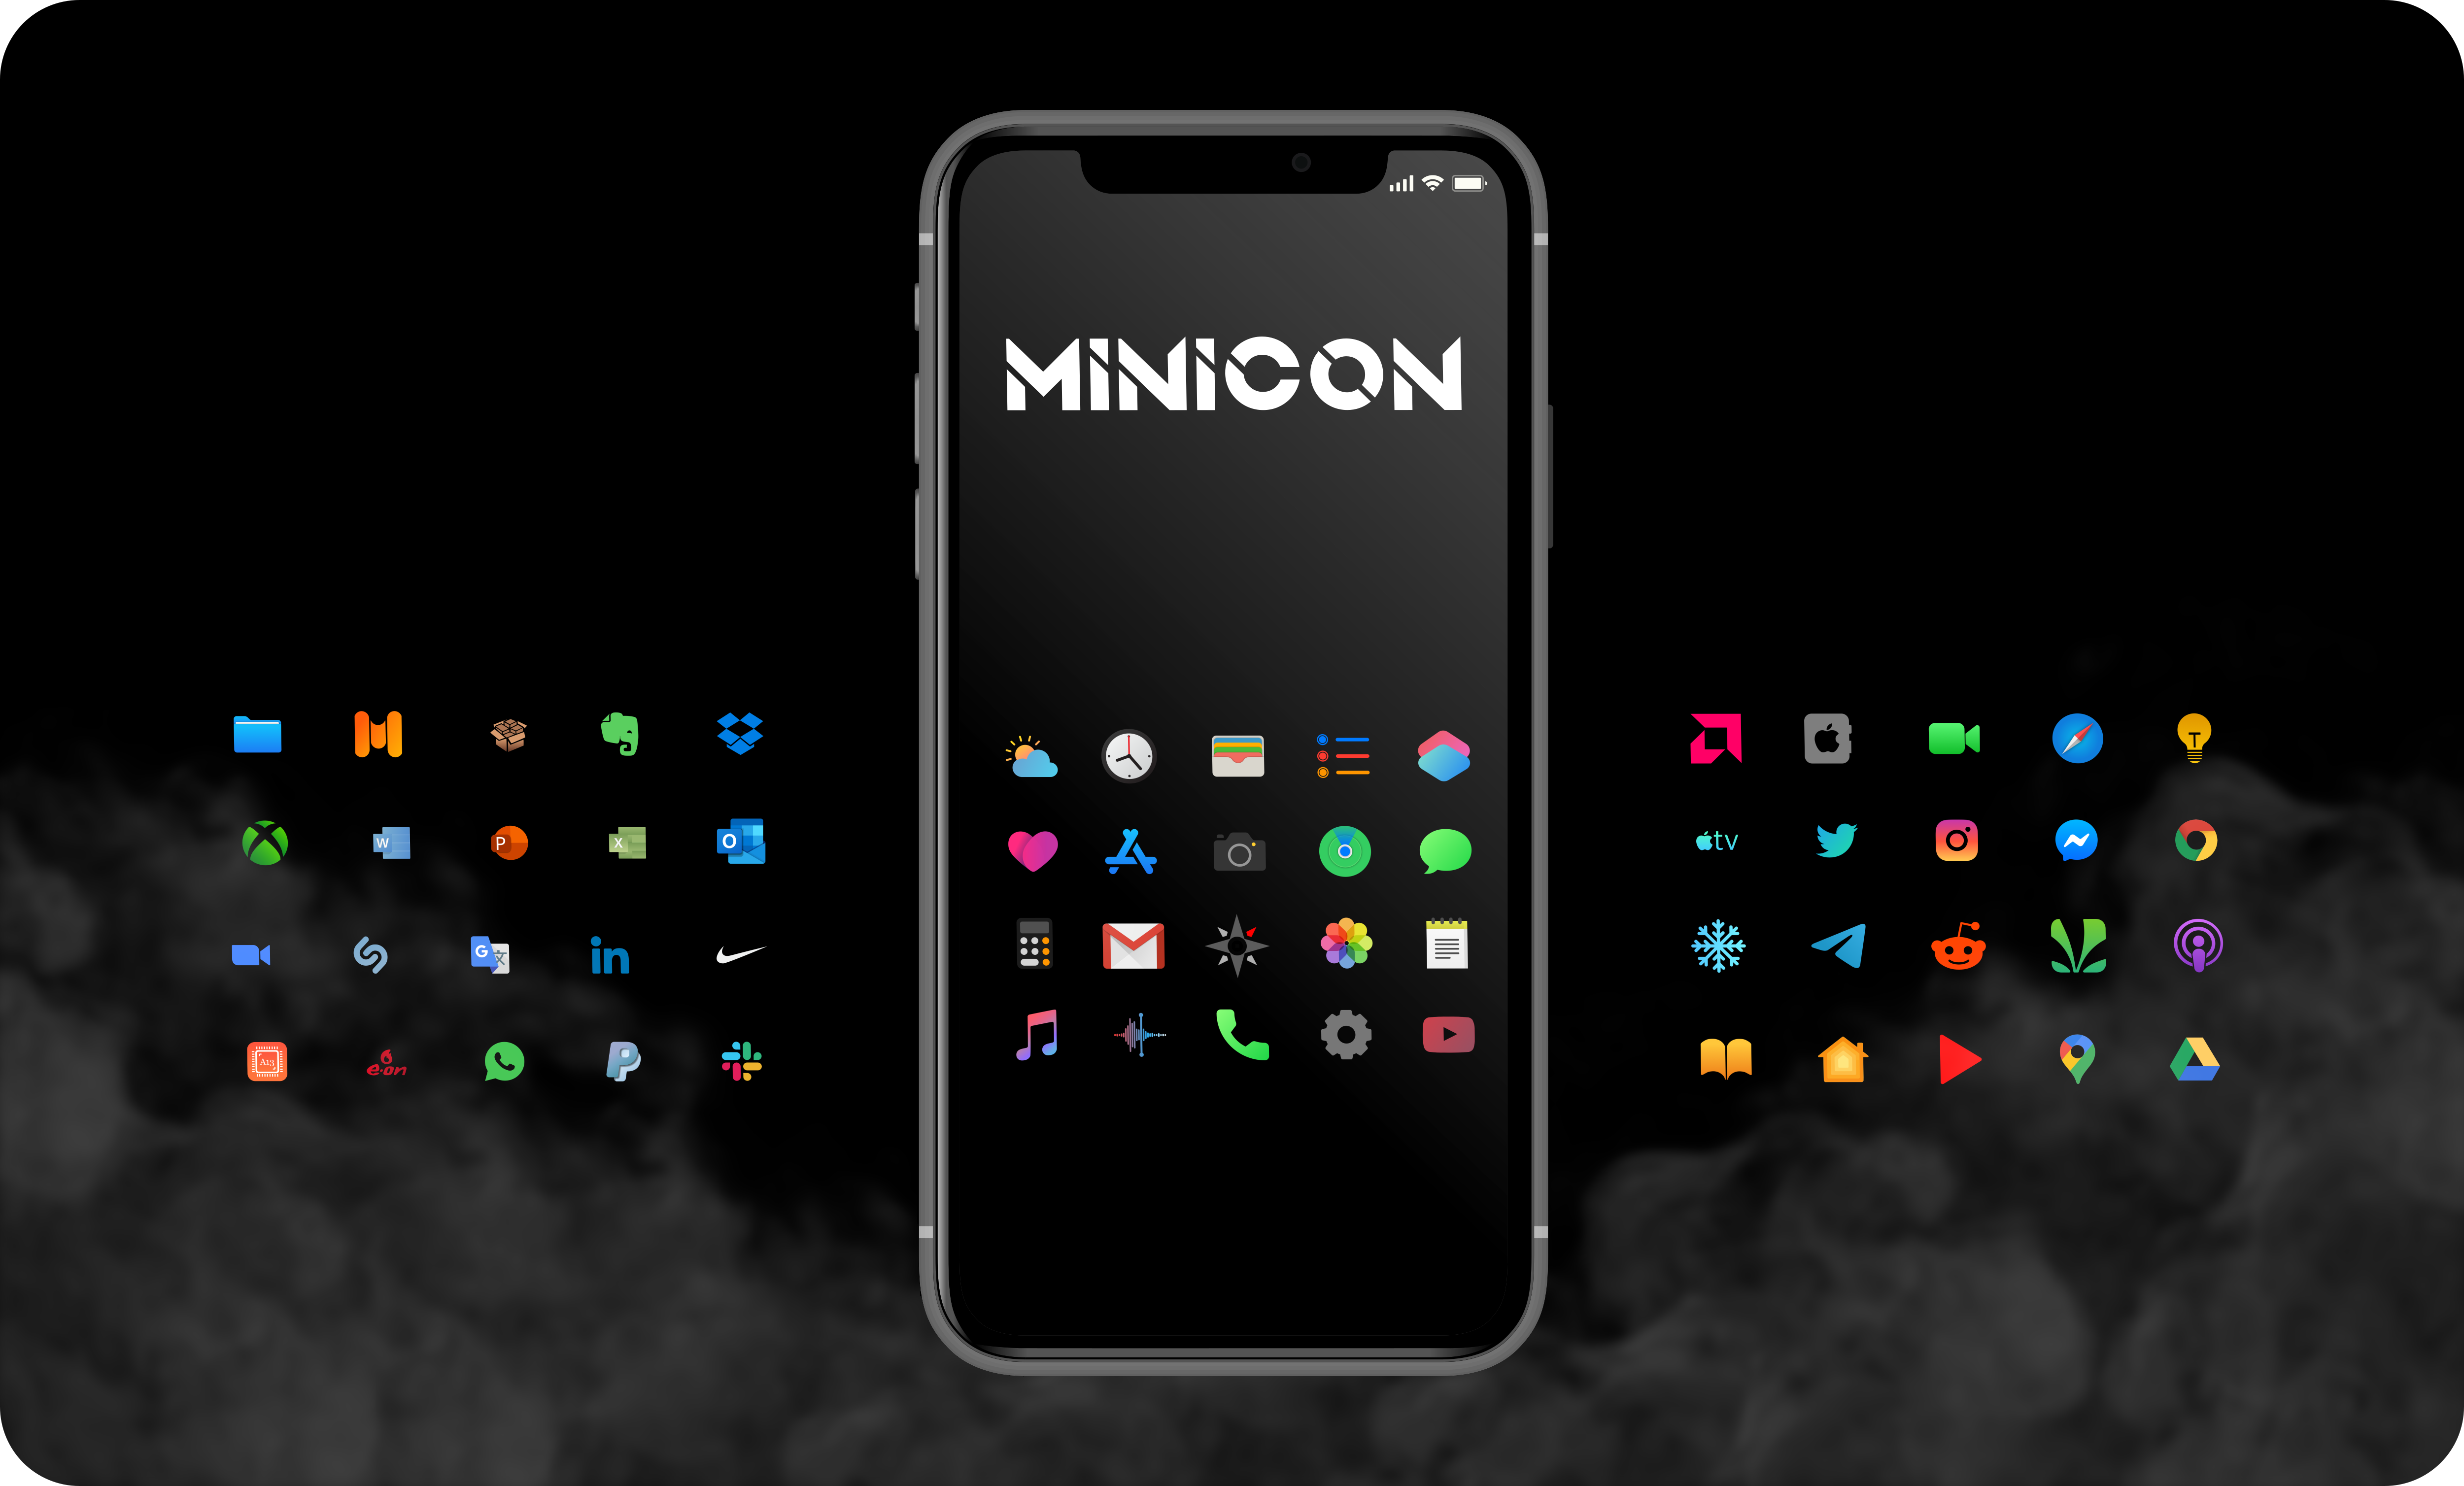 Minicon